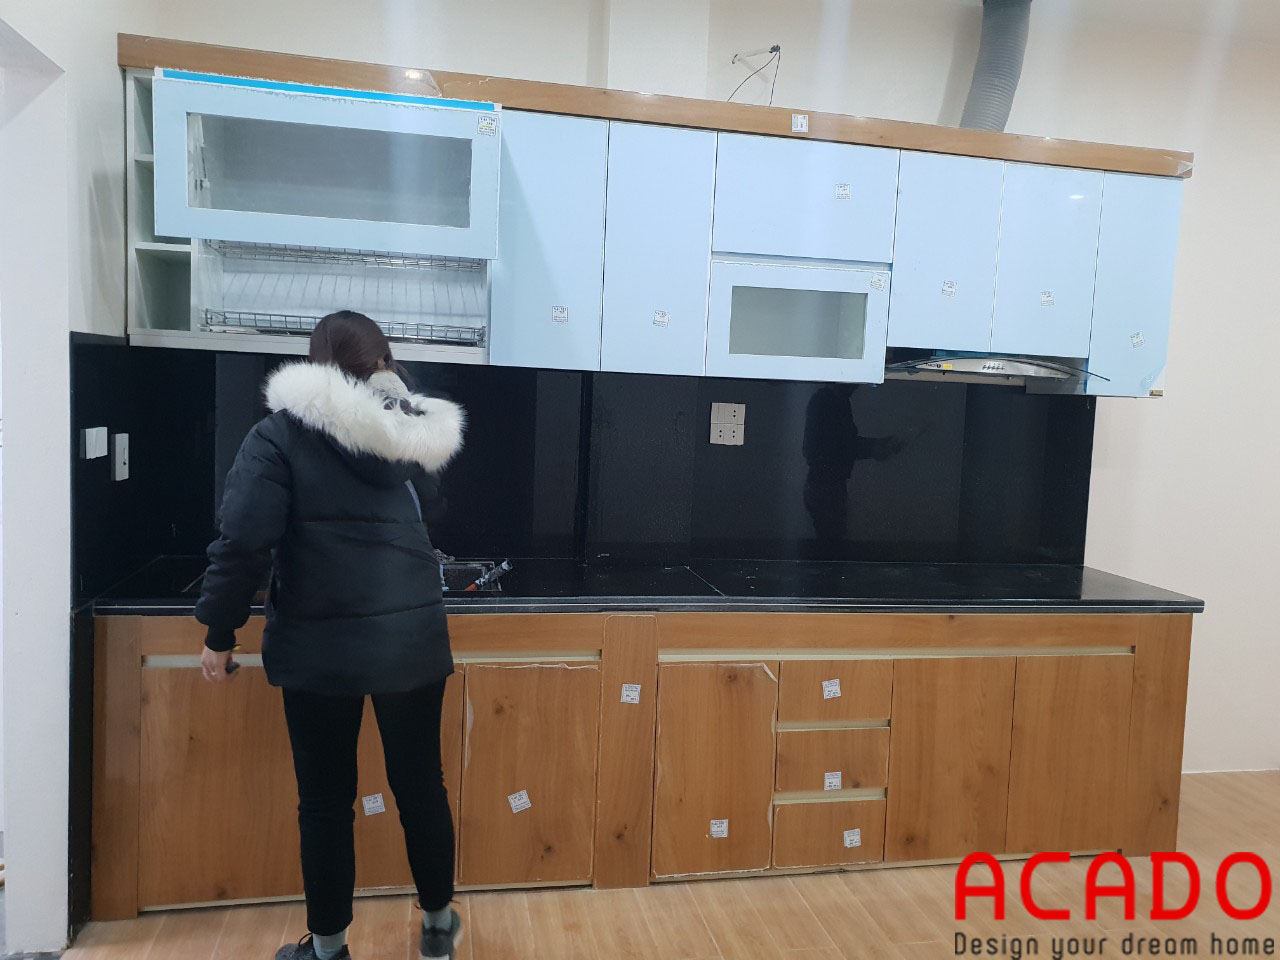 Tủ bếp của gia đình chị Mai sau khi hoàn thiện đang được nhân viên ACADO giám sát và kiểm tra trước khi bàn giao cho gia chủ.